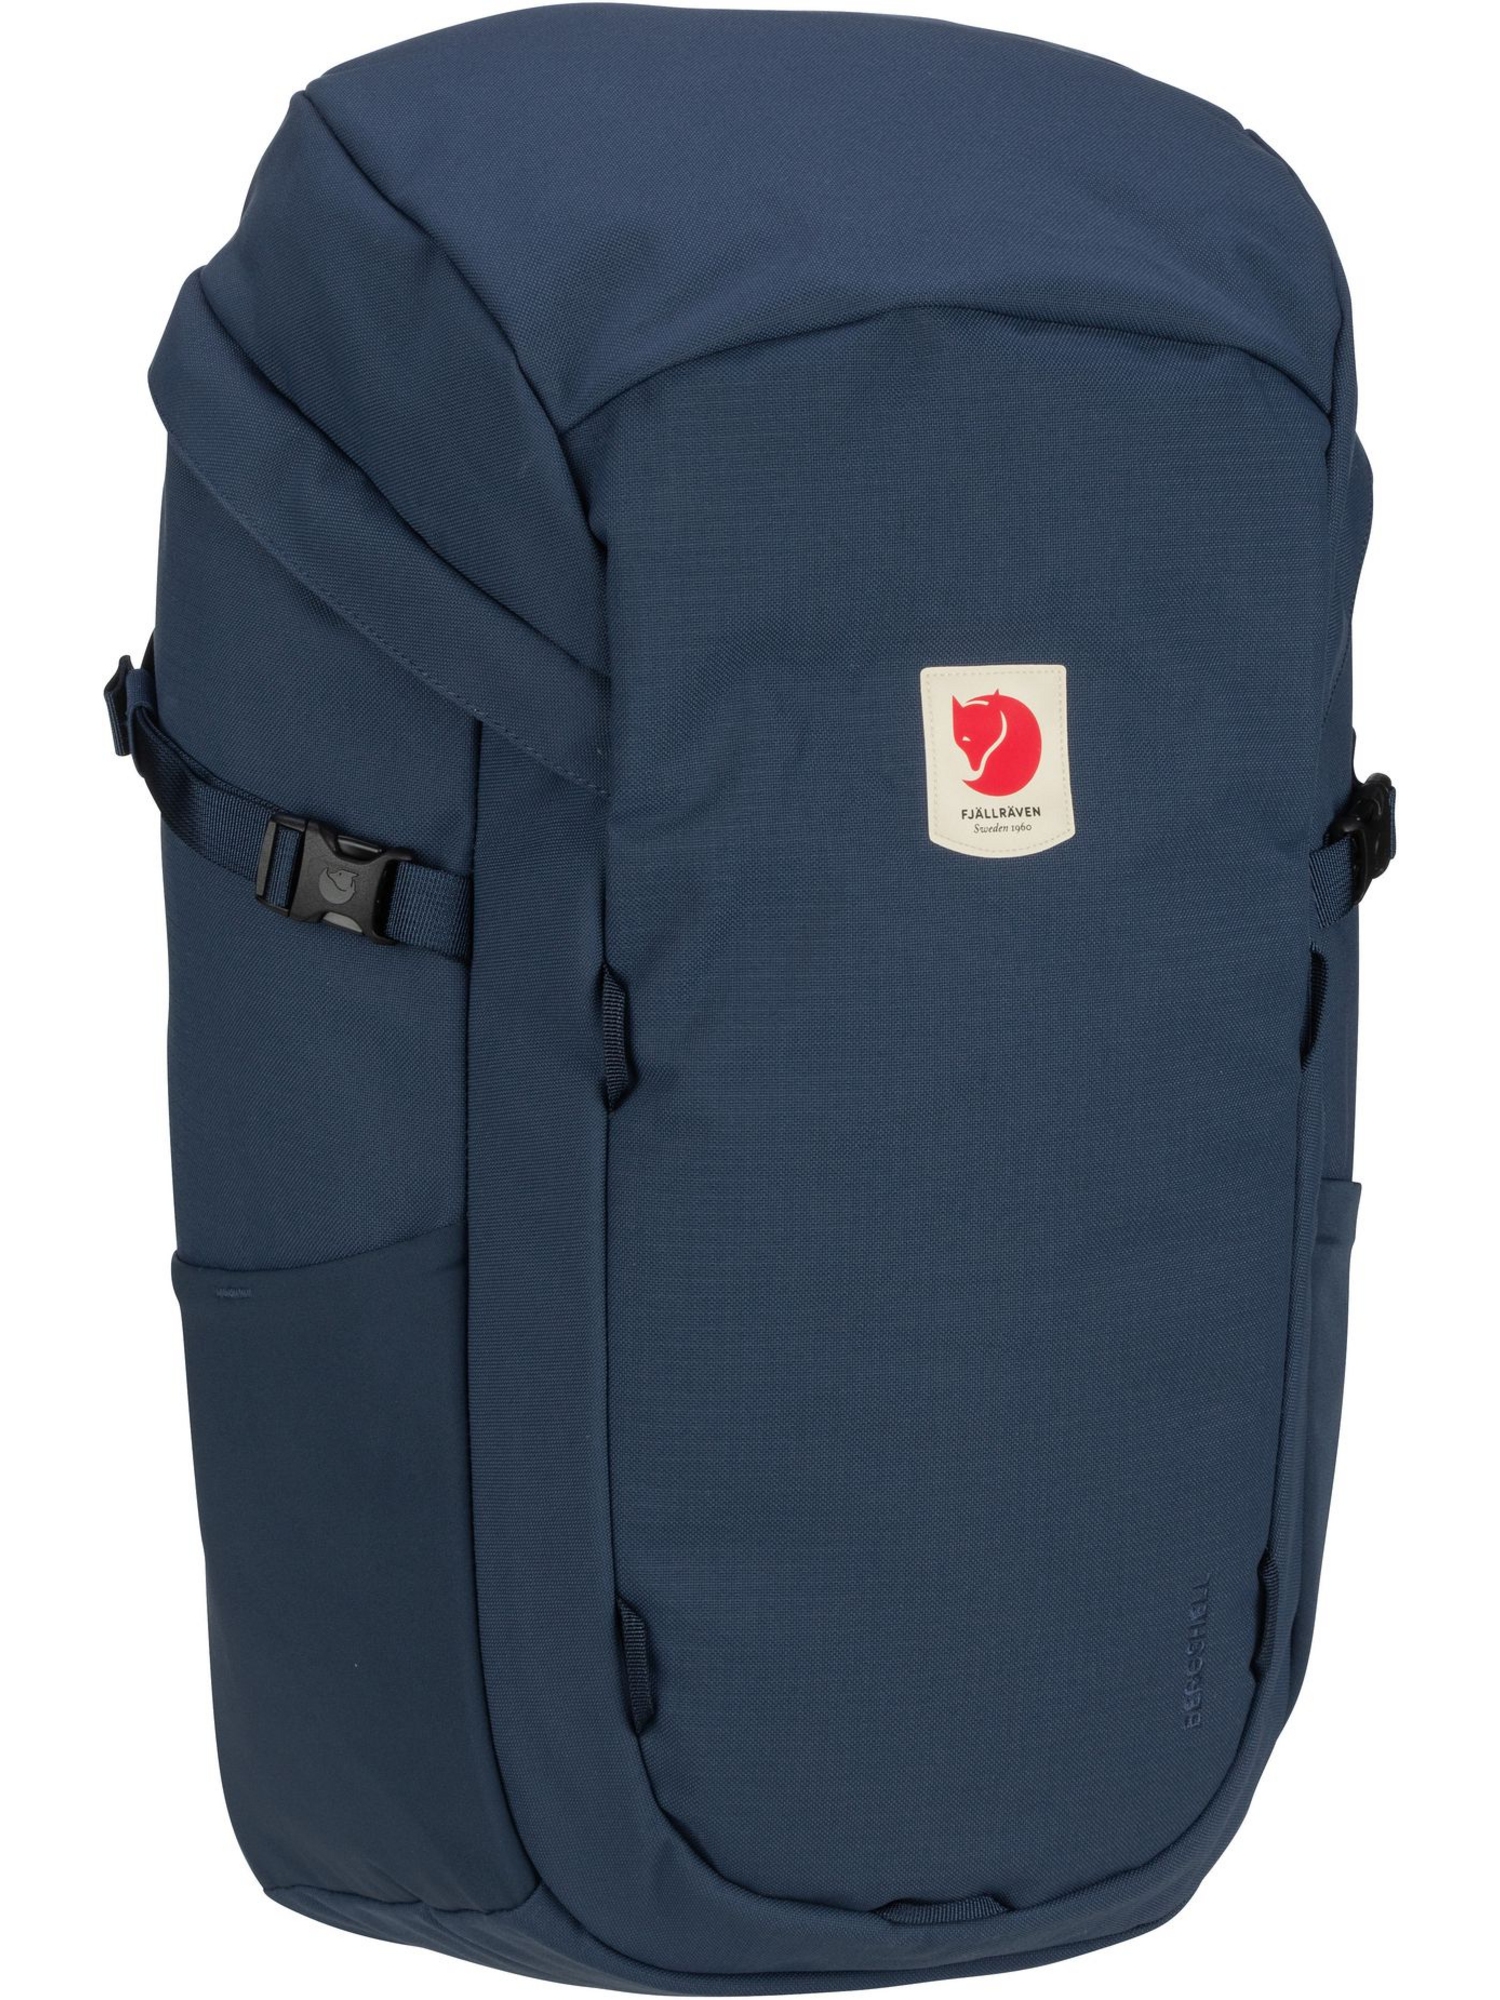 Рюкзак FJÄLLRÄVEN / Backpack Ulvö 30, цвет Mountain Blue рюкзак fjällräven backpack ulvö 30 цвет mountain blue